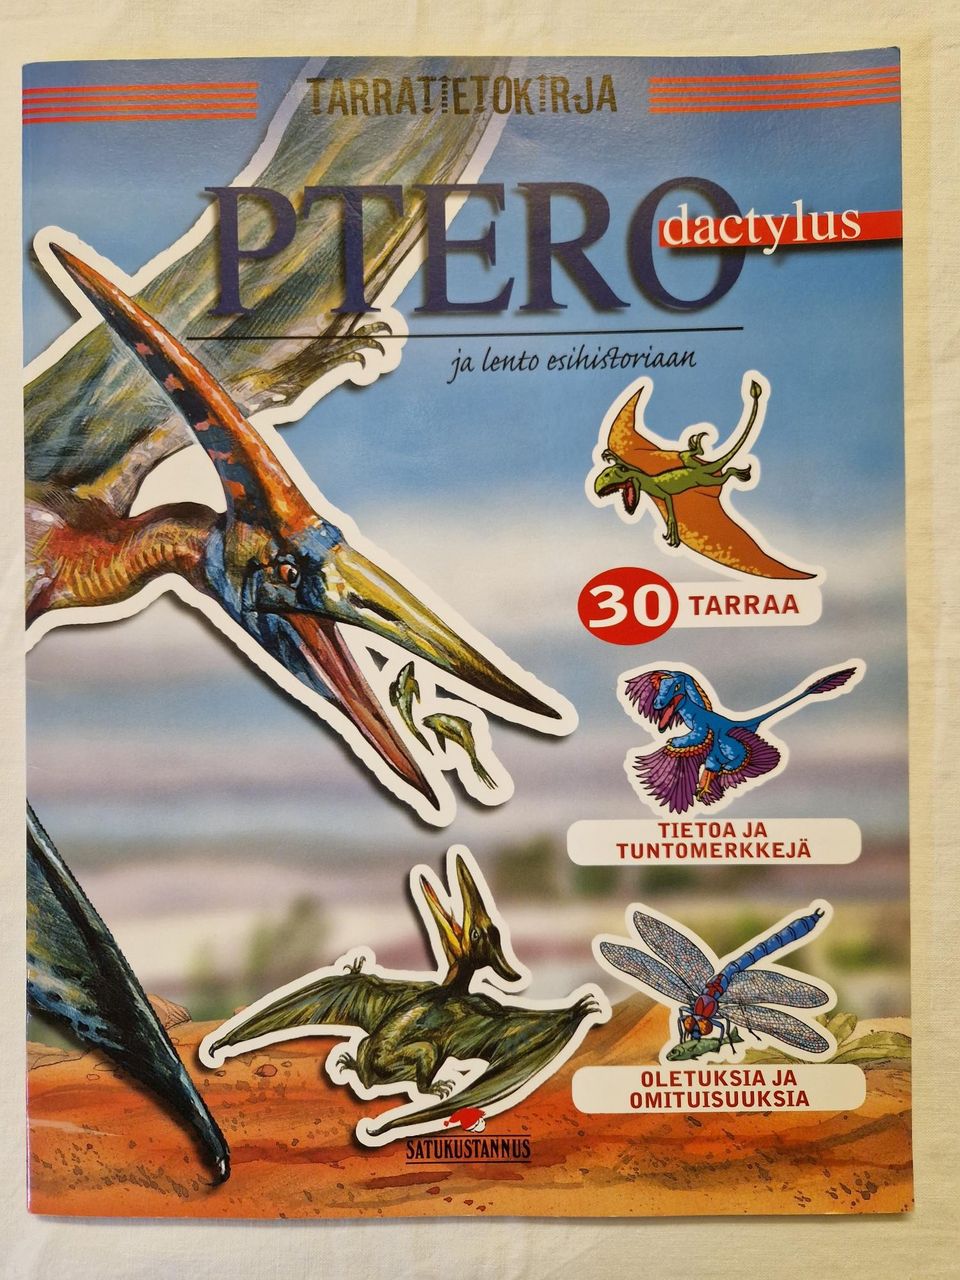 Tarratietokirja: Pterodactylus ja lento esihistoriaan